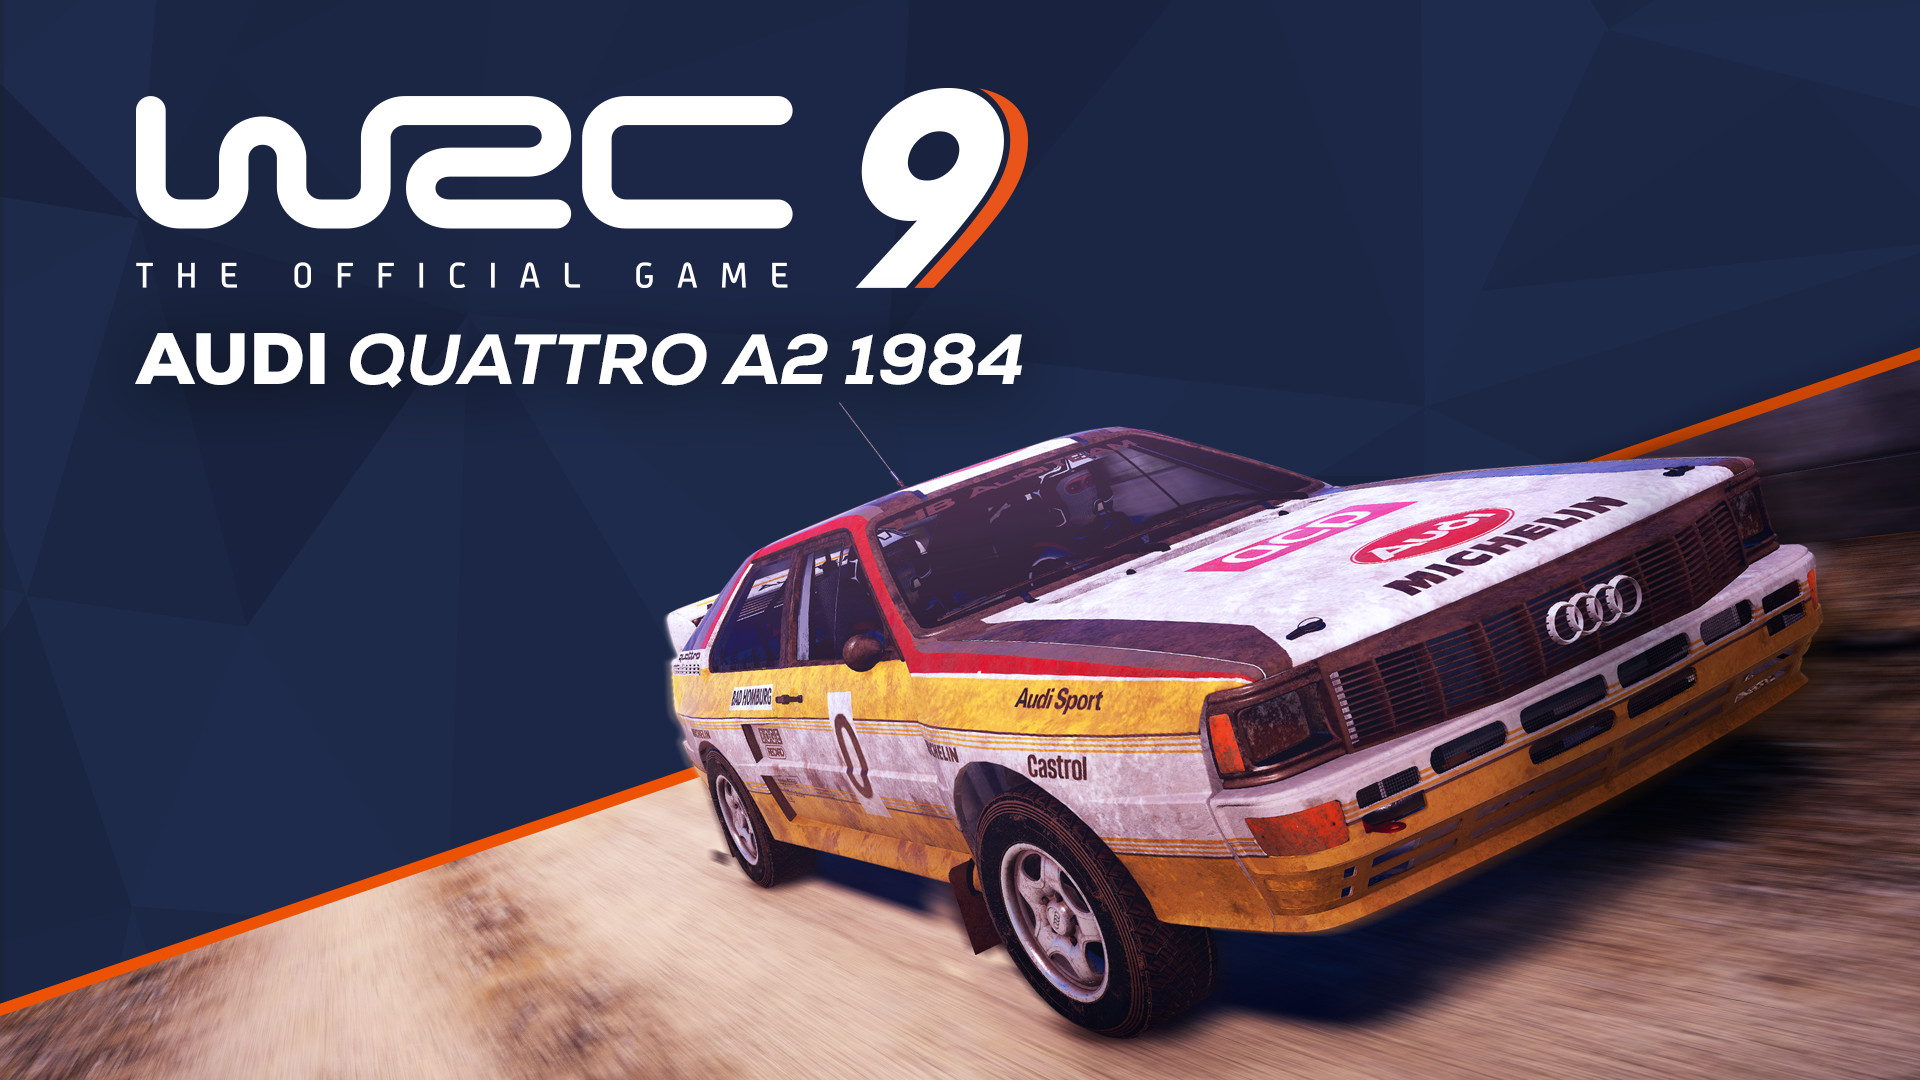 WRC 9 Audi Quattro A2 1984 | WW (5f78b1cd-4bae-49ea-a298-45c8d68fcdf6)